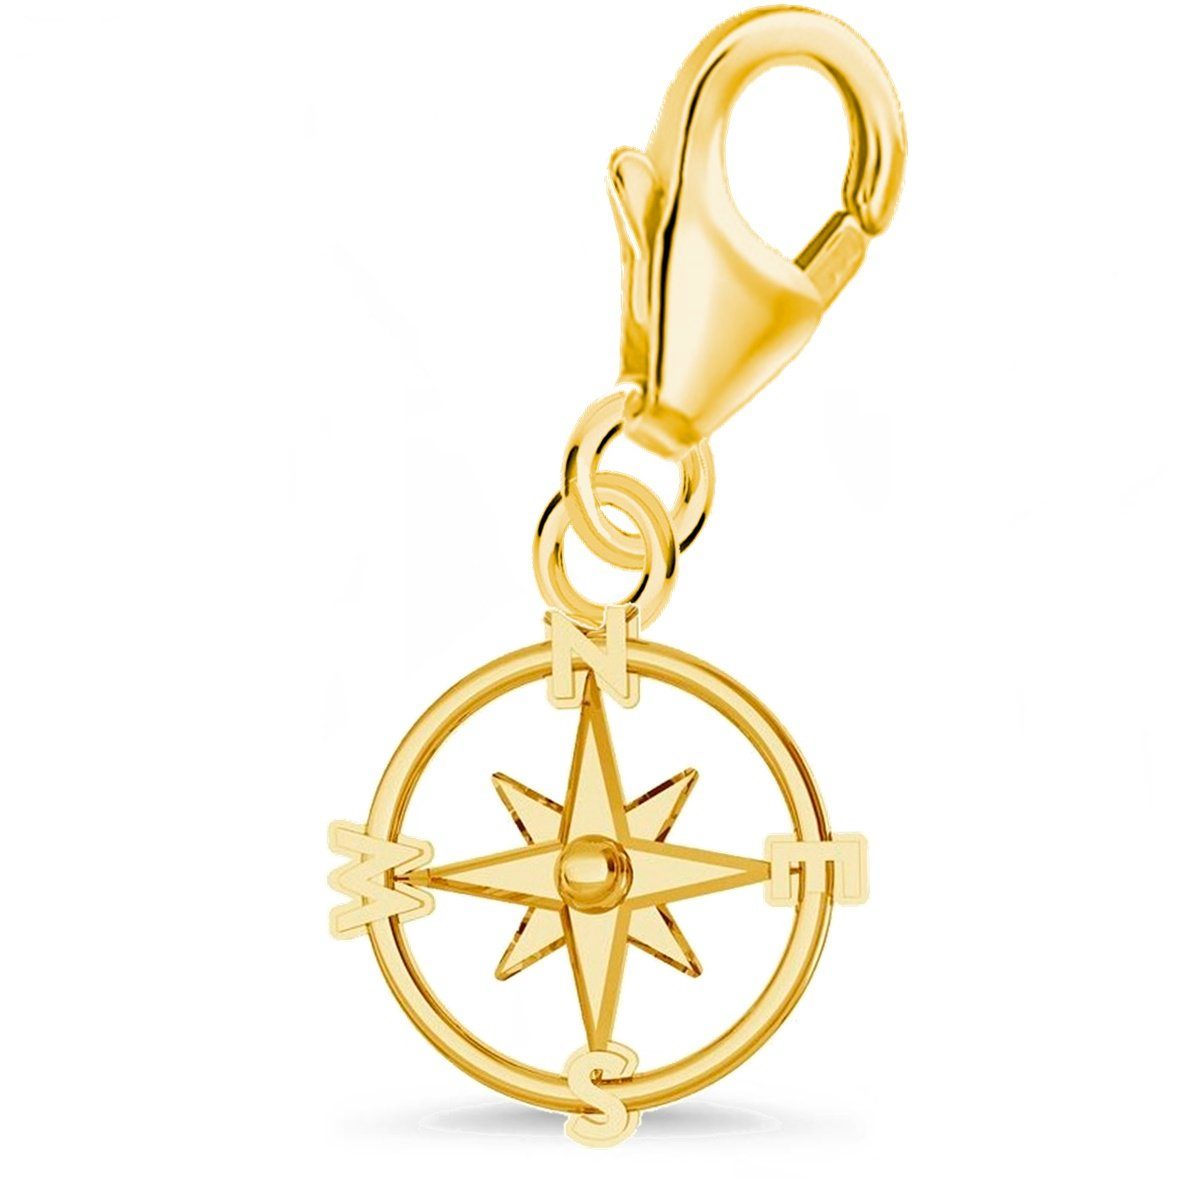 Goldene Hufeisen Charm-Einhänger Silber Sterling Vergoldet Karabiner Kompass 925 Charm